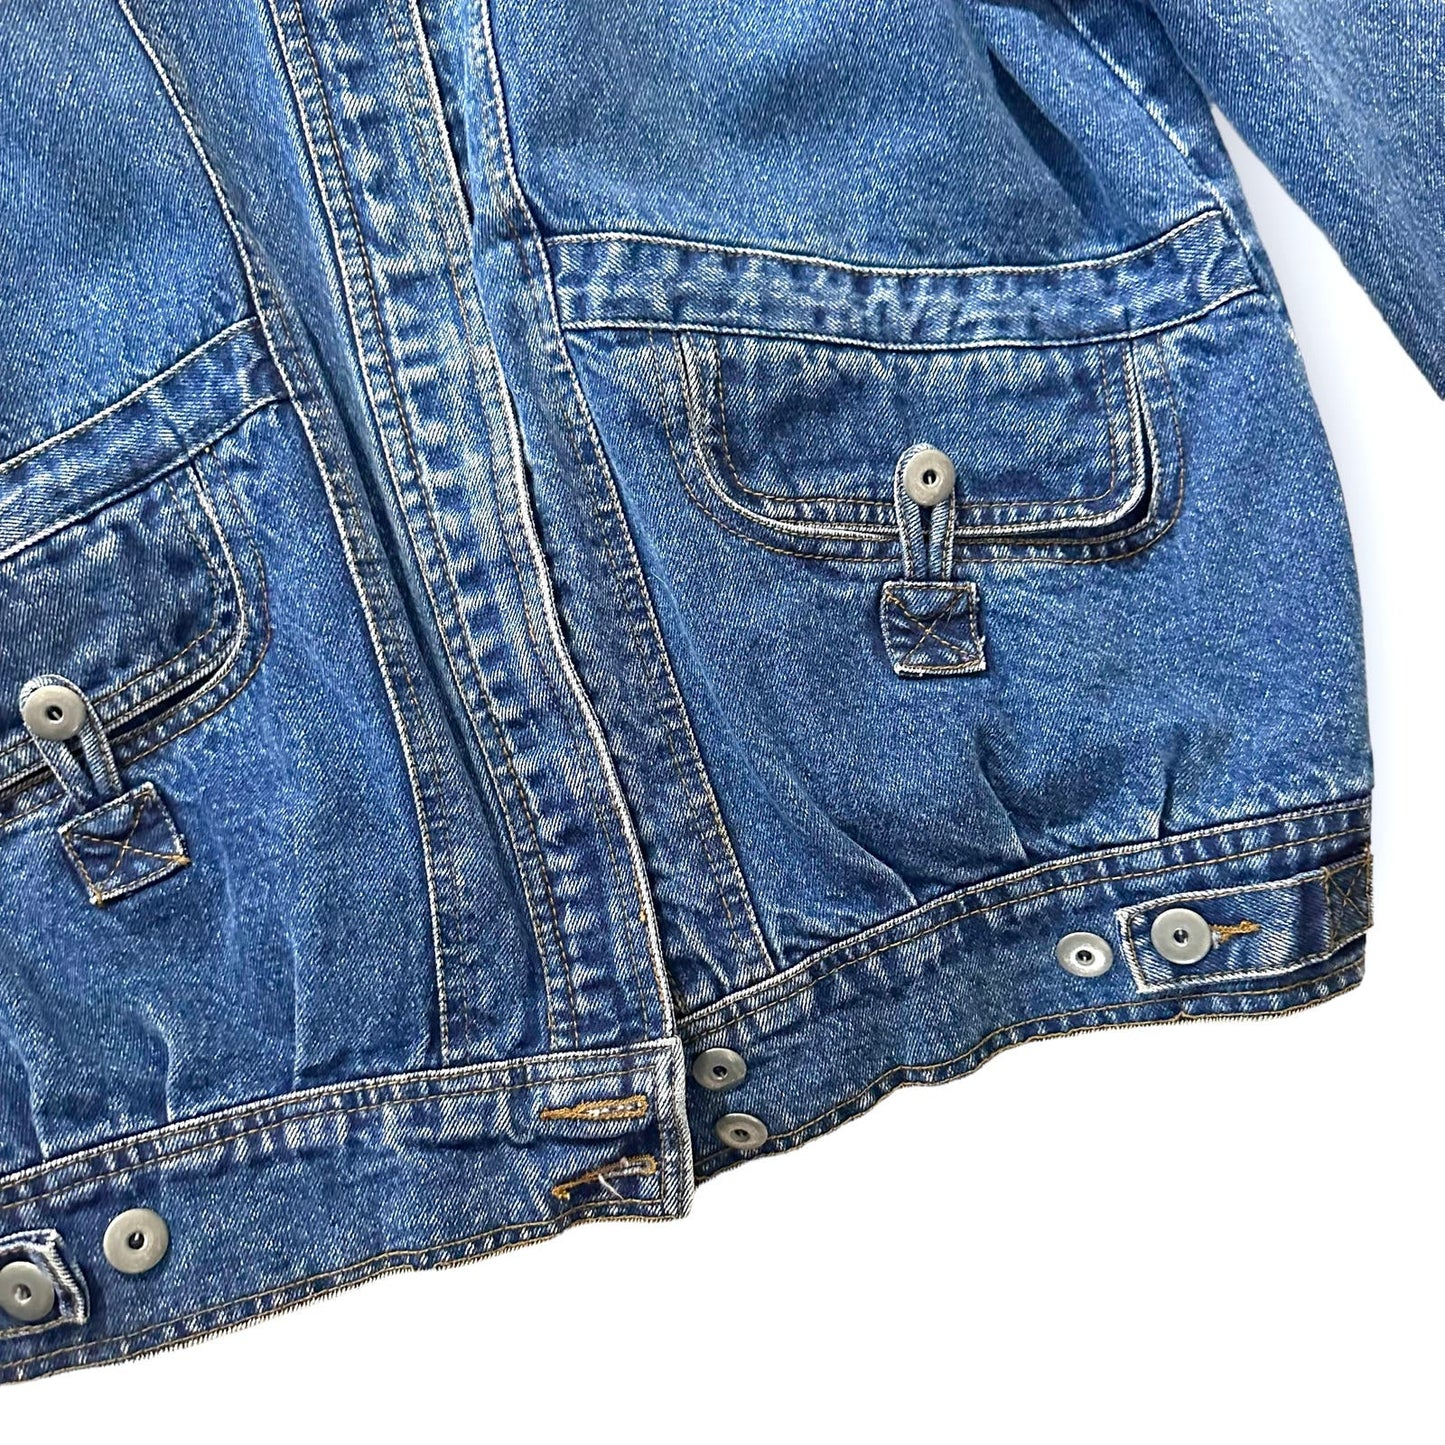 Vintage 80s Blue Cotton Denim Jean Jacket Size 14/16